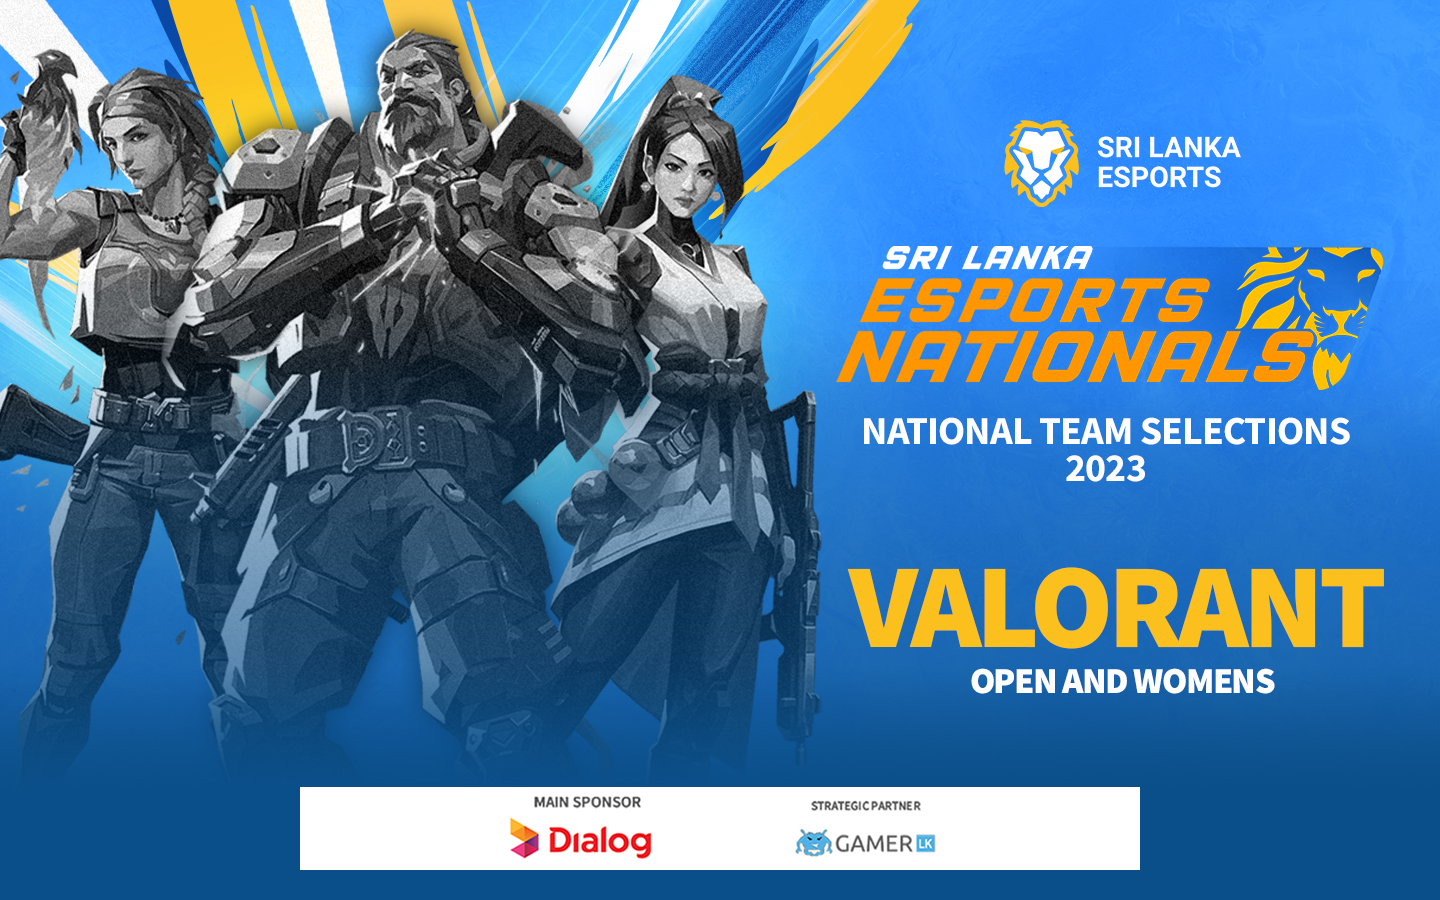 Sri Lanka Esports Nationals 2023 - Valorant